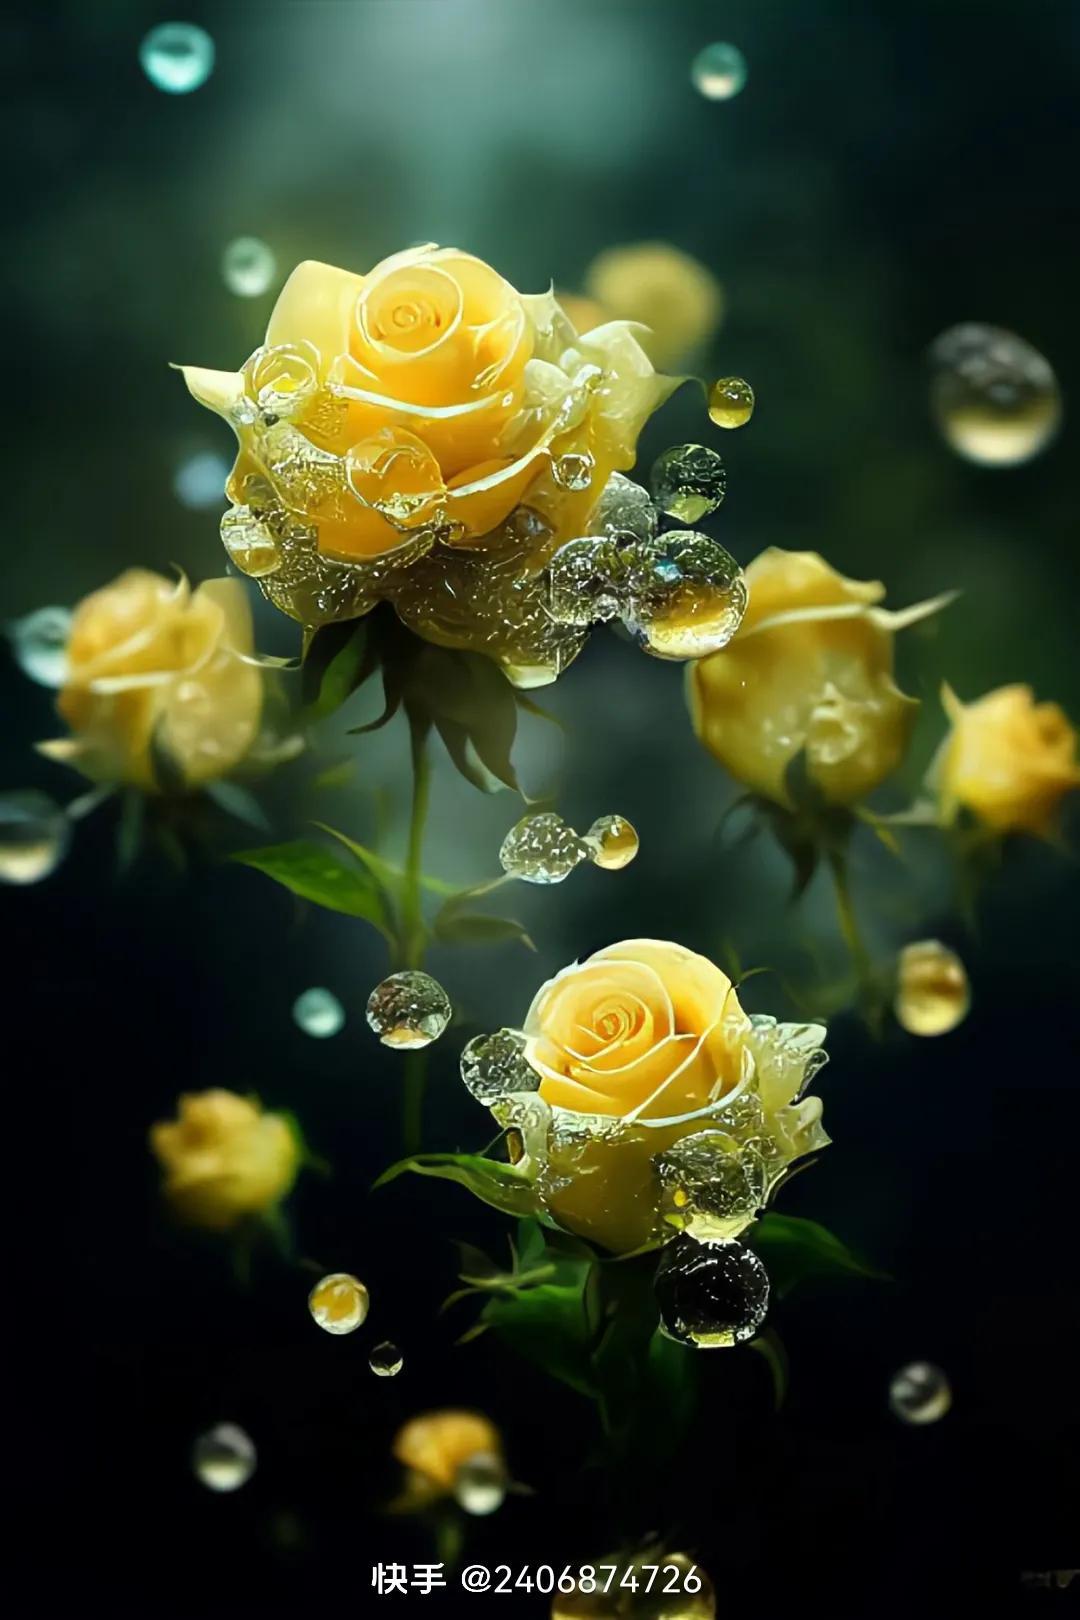 黄玫瑰的花语是啥,金红玫瑰花语?